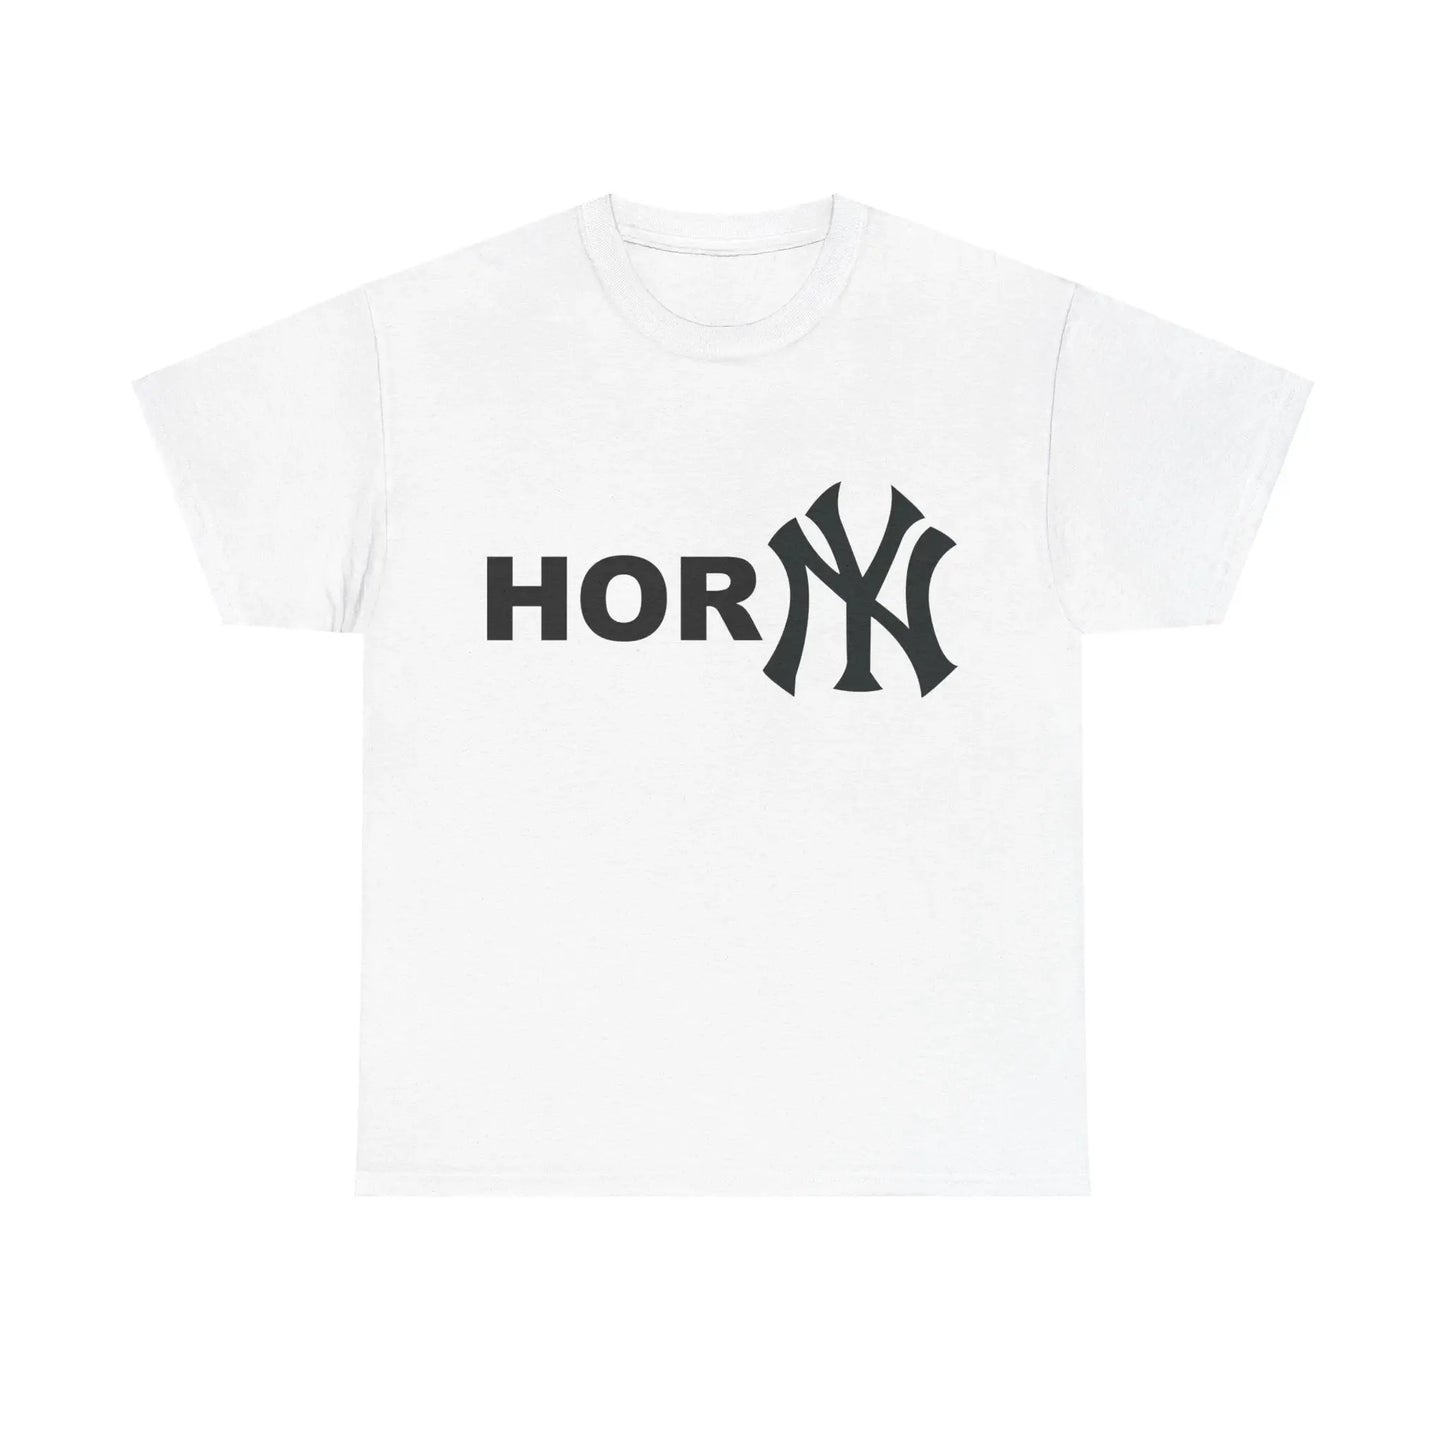 Hor NY (Horny New York Yankees) T-Shirt - Failure International failureinternational.com store brand tiktok instagram